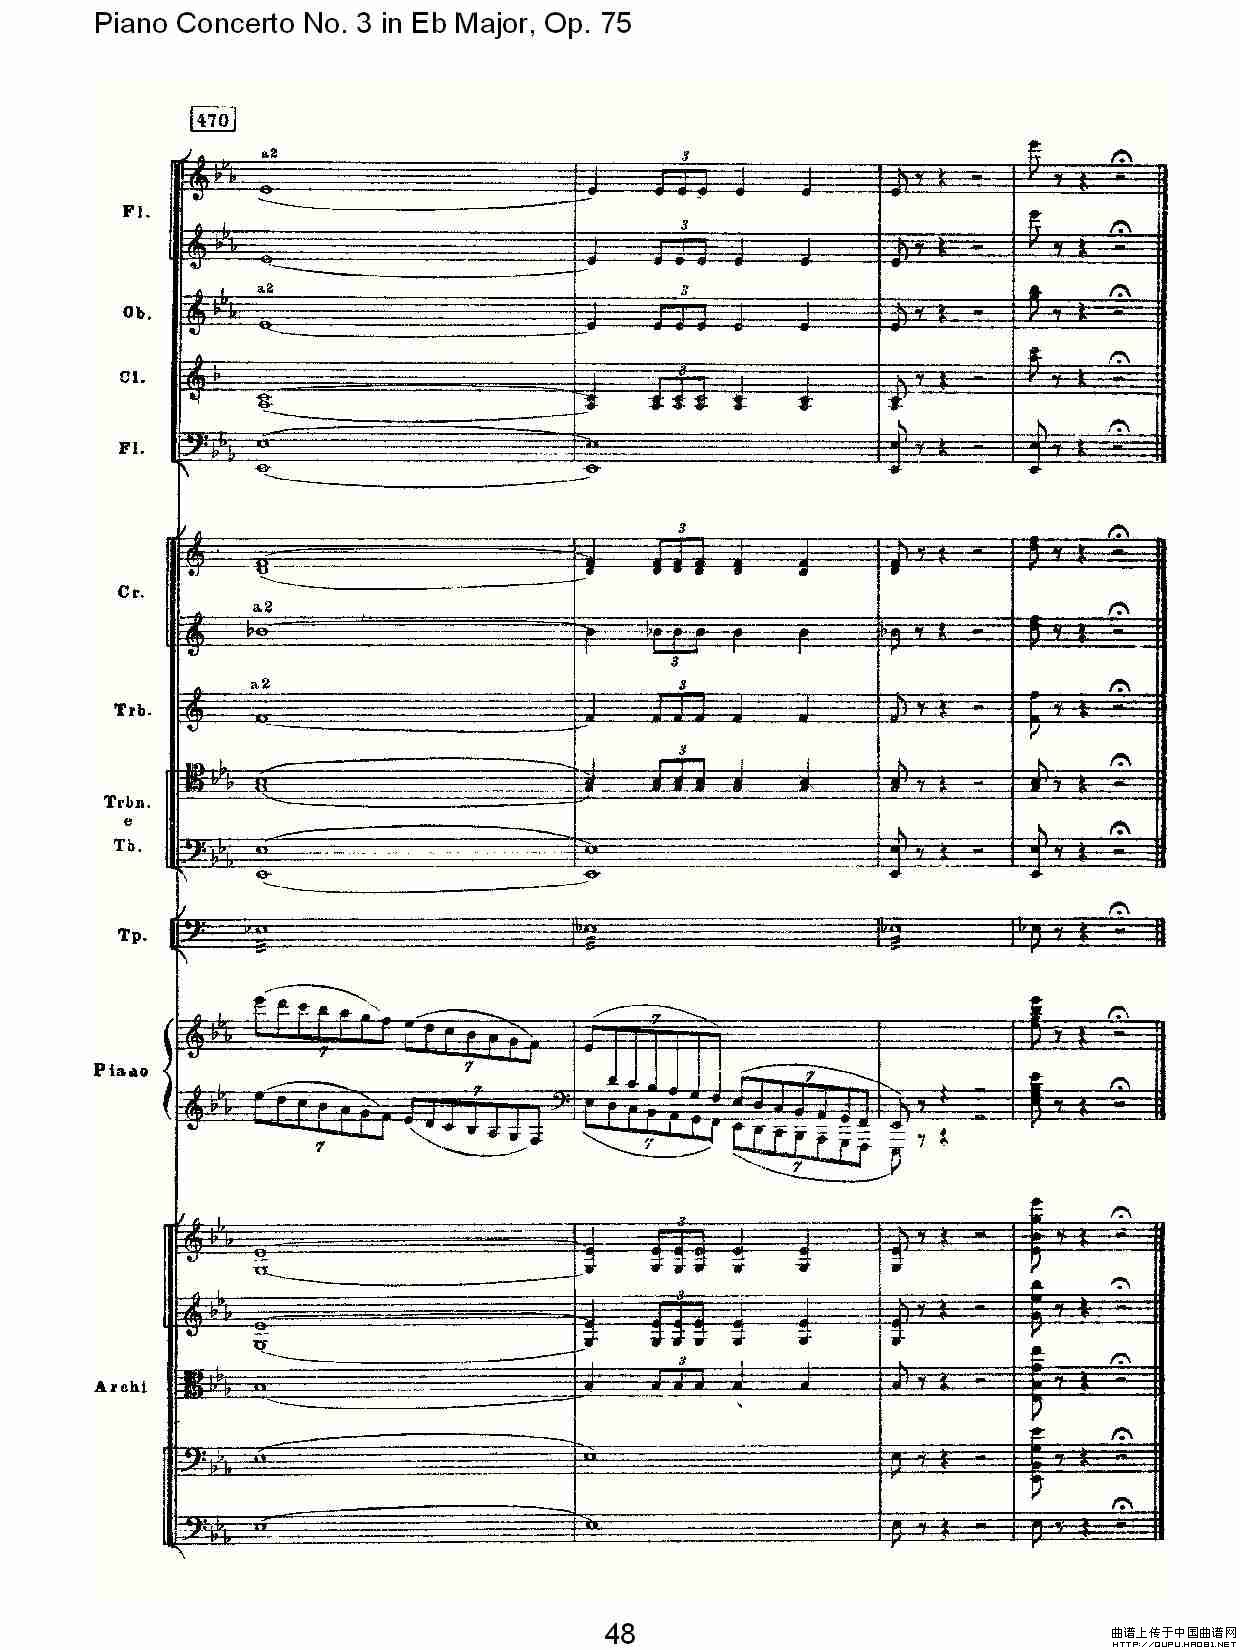 Piano Concerto No.3 in Eb Major, Op.75（Eb大调第三钢琴协奏）(1)_原文件名：Piano Concerto No.3 in Eb Major, Op.7519.jpg